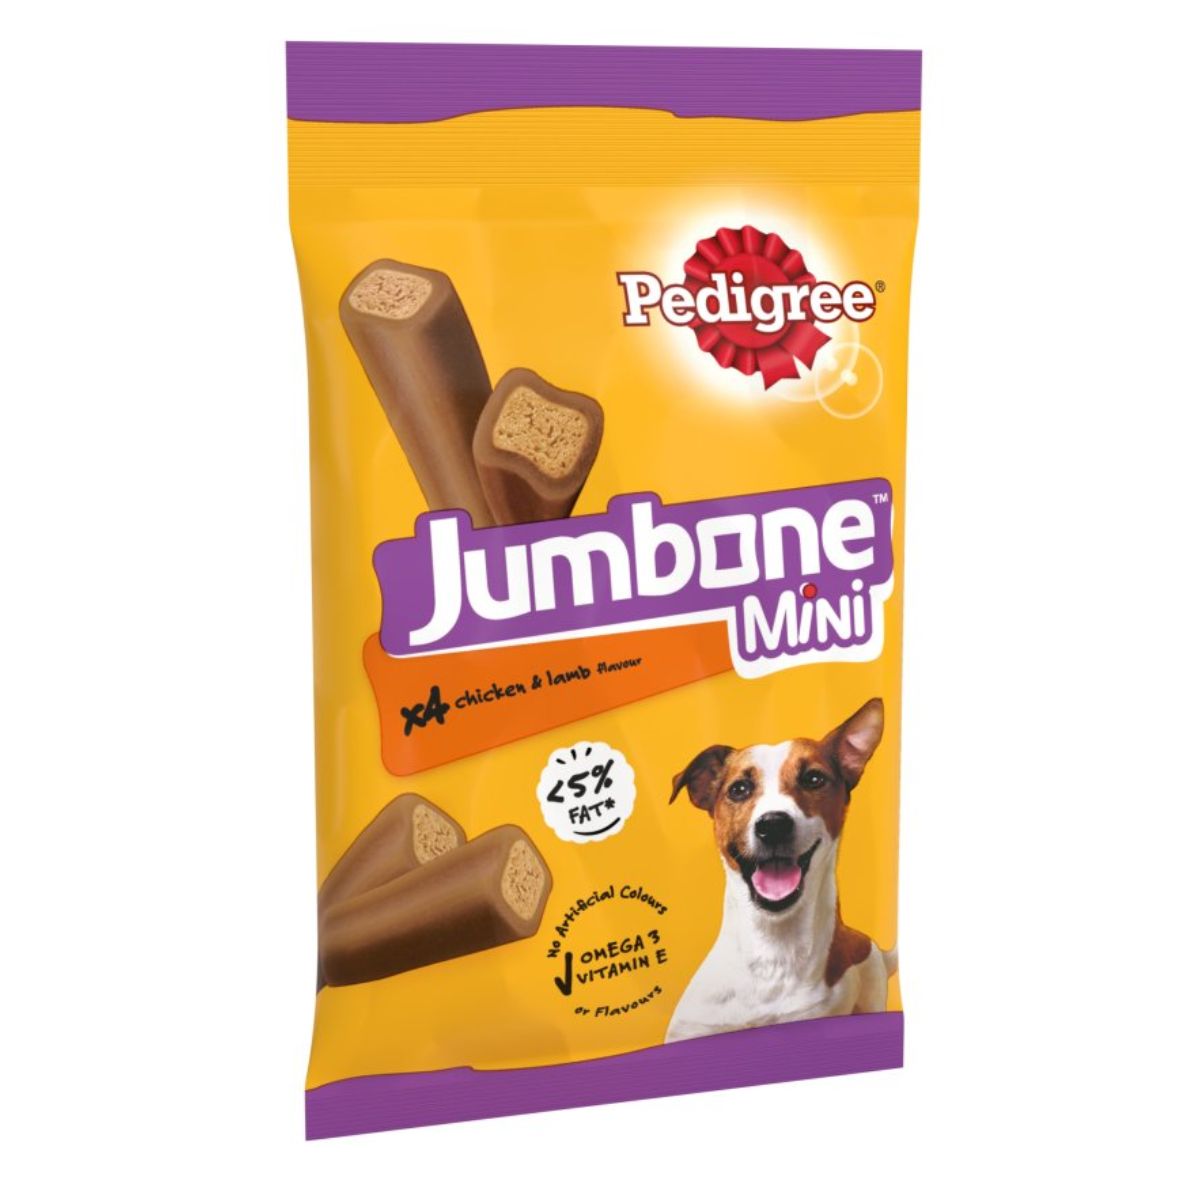 Pedigree - Jumbone Mini Adult Small Dog Treats Chicken & Lamb 4 Chews - 160g